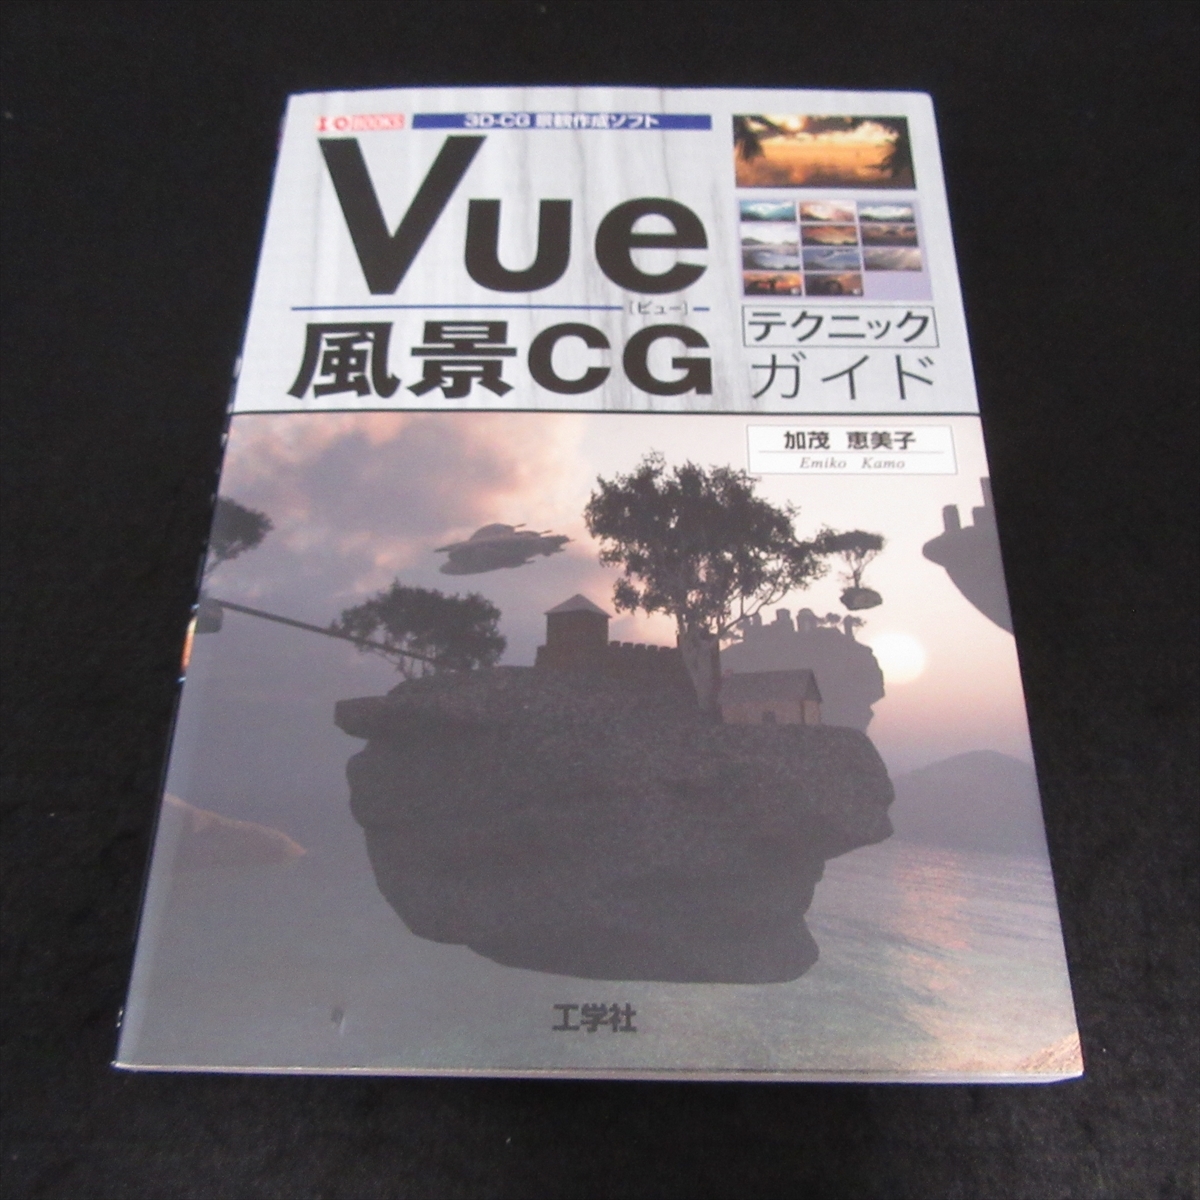  распроданный редкий книга@[Vue пейзаж CG technique гид ] # отправка 185 иен ... прекрасный . инженерия фирма 3D CG городской пейзаж изготовление soft [Vue]. способ применения I*O BOOKS *